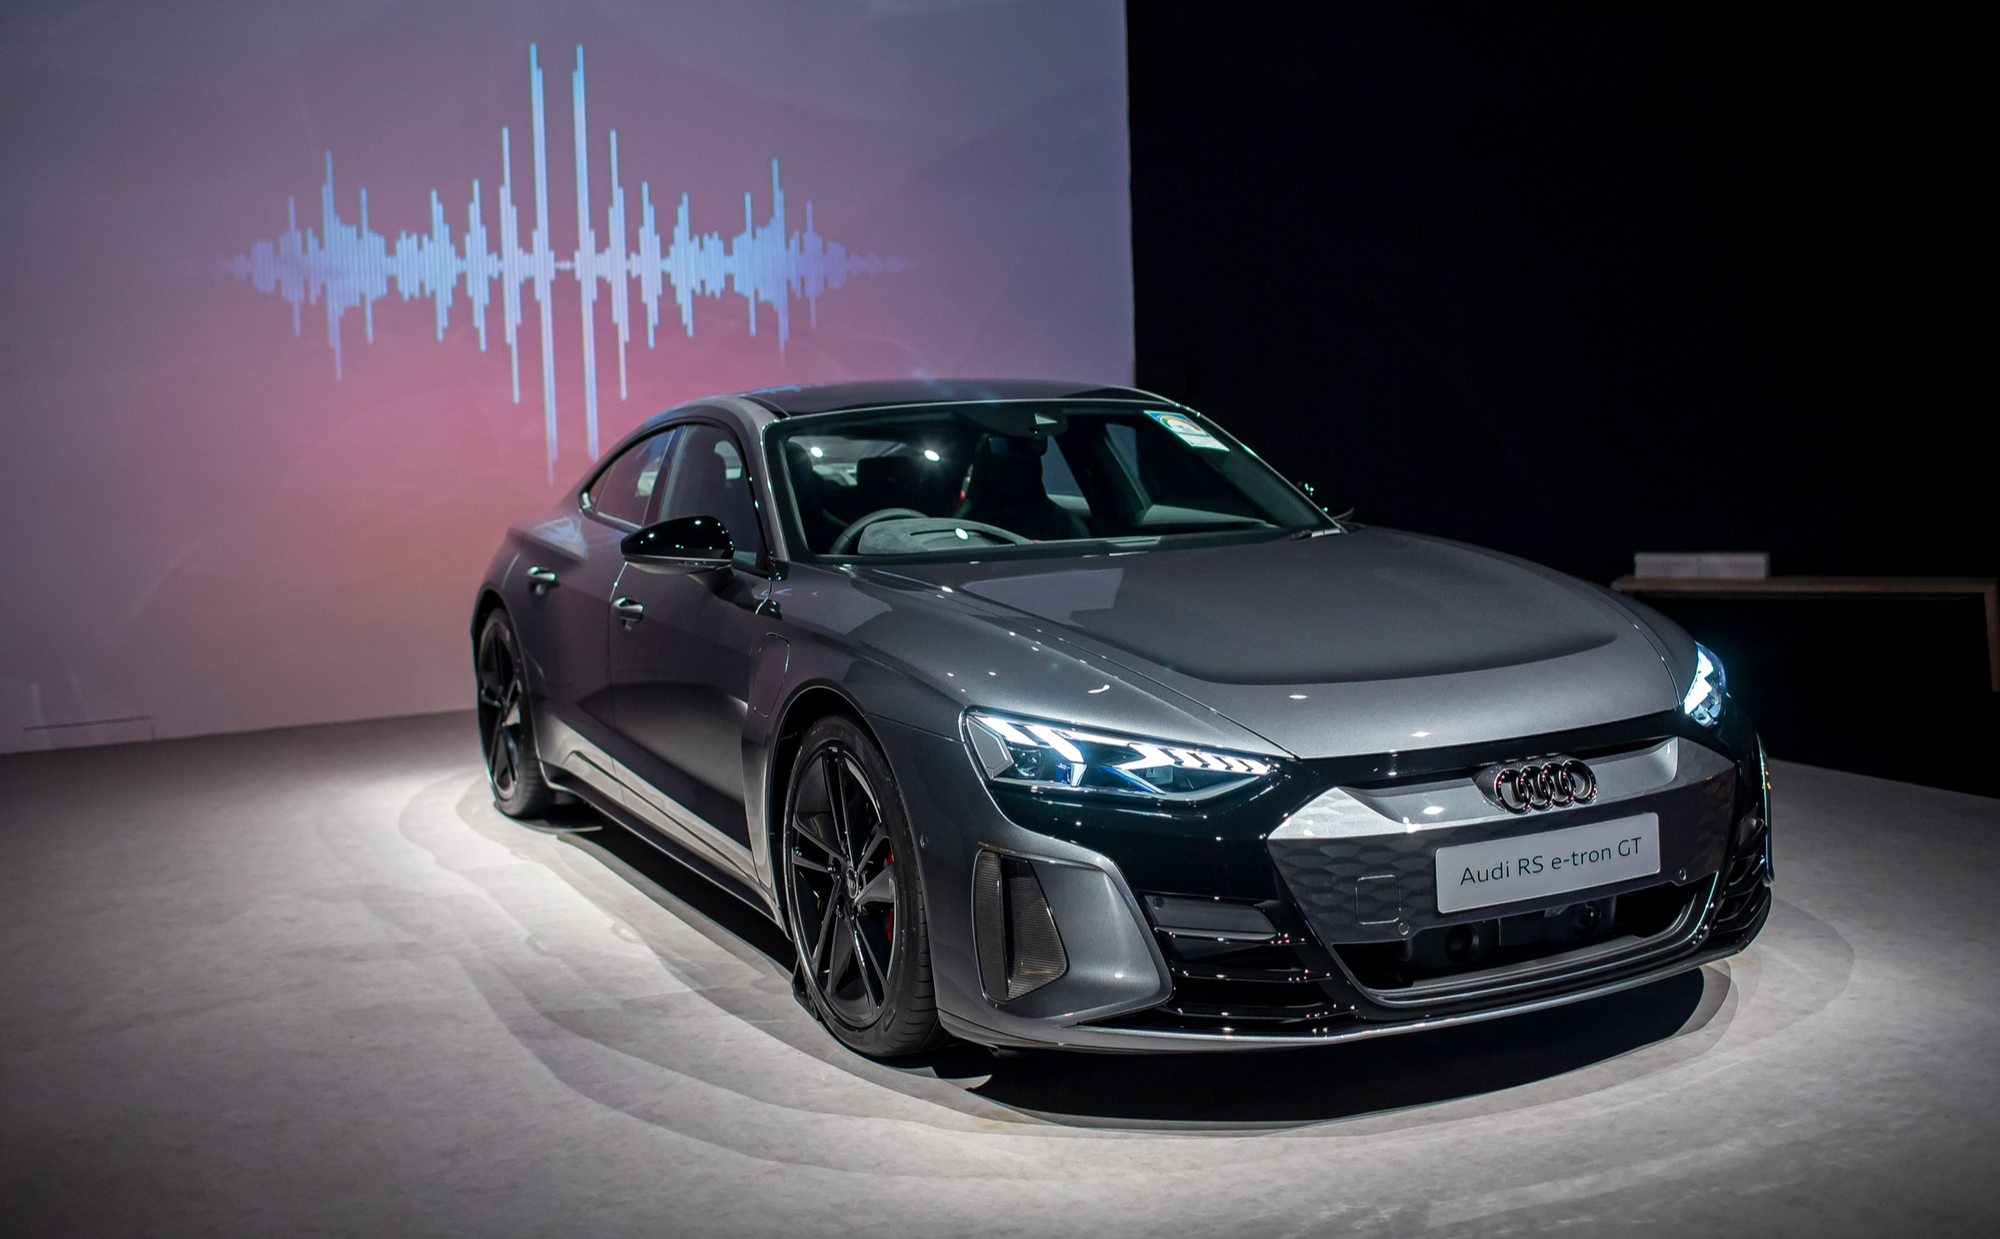 Audi 'khoe' dàn ô tô điện, hé lộ kế hoạch phân phối tại Việt Nam - Ảnh 6.